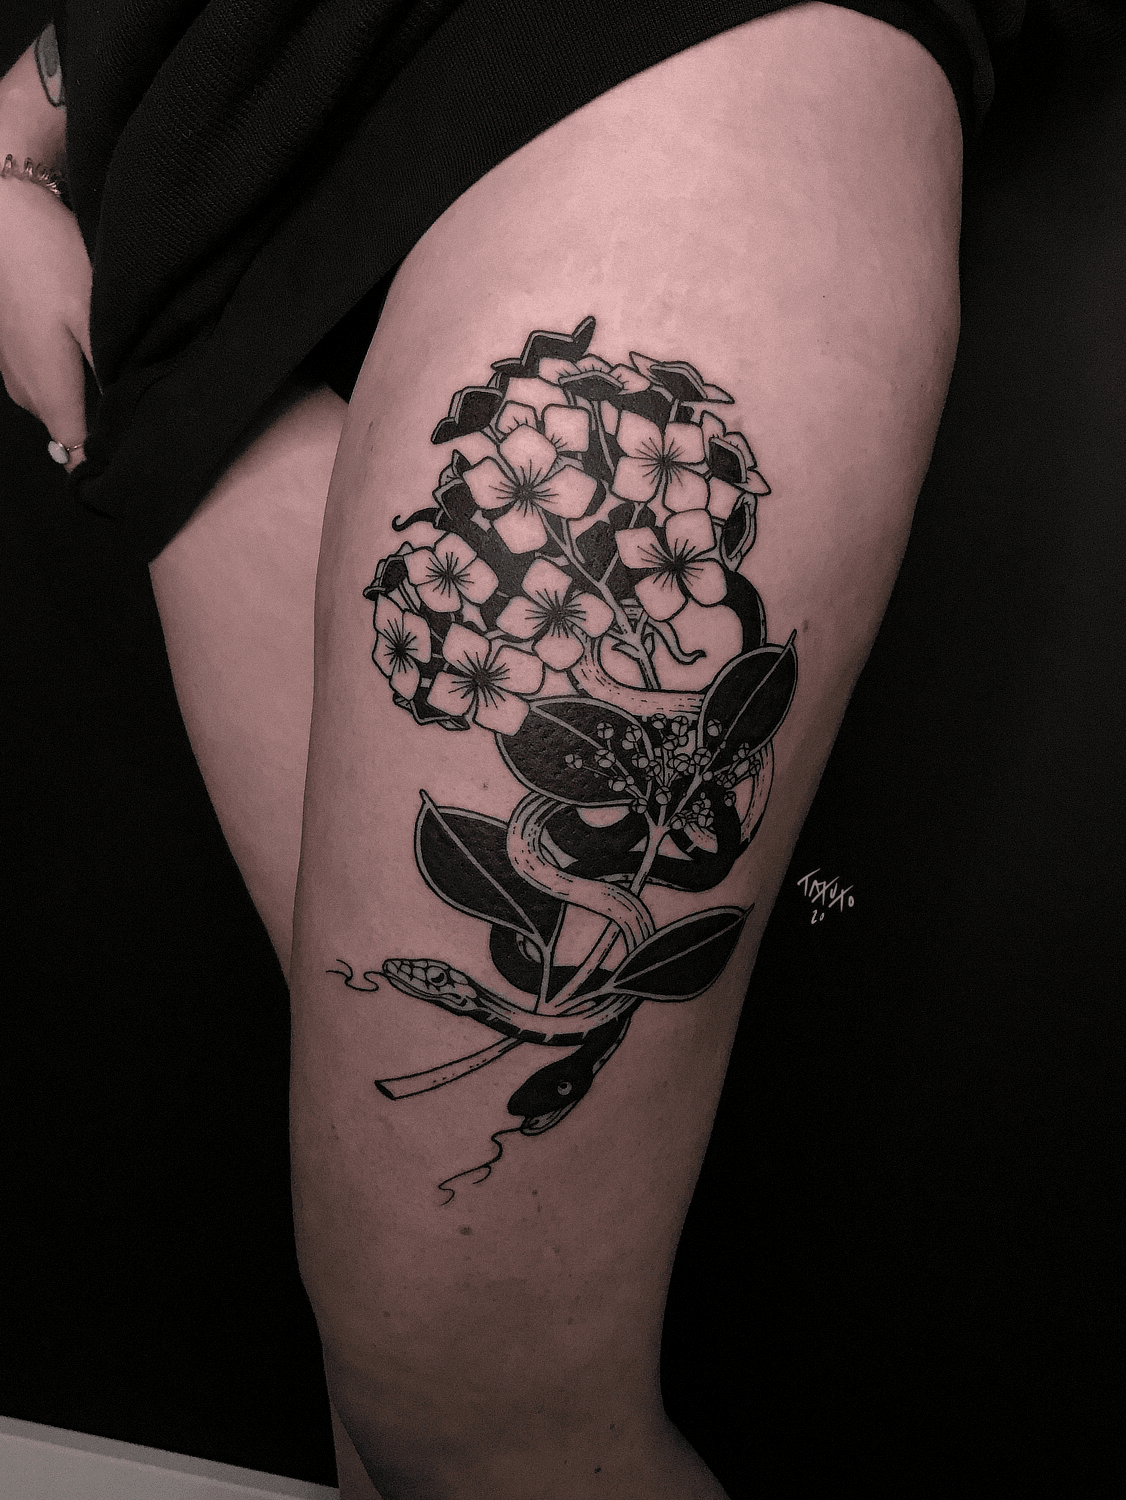 Blackwork Shoulder hydrangea daffodil flower tattoo Alexus Oropeza  Portland OR  Hydrangea tattoo Shoulder tattoo Flower cover up tattoos